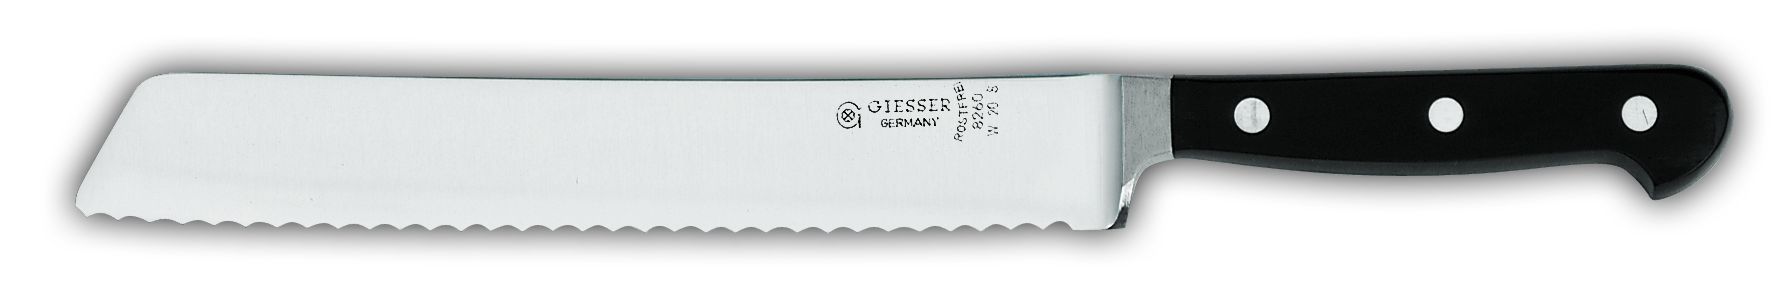 Нож для хлеба 8260w с волнистым лезвием, 20 см,  черная рукоятка